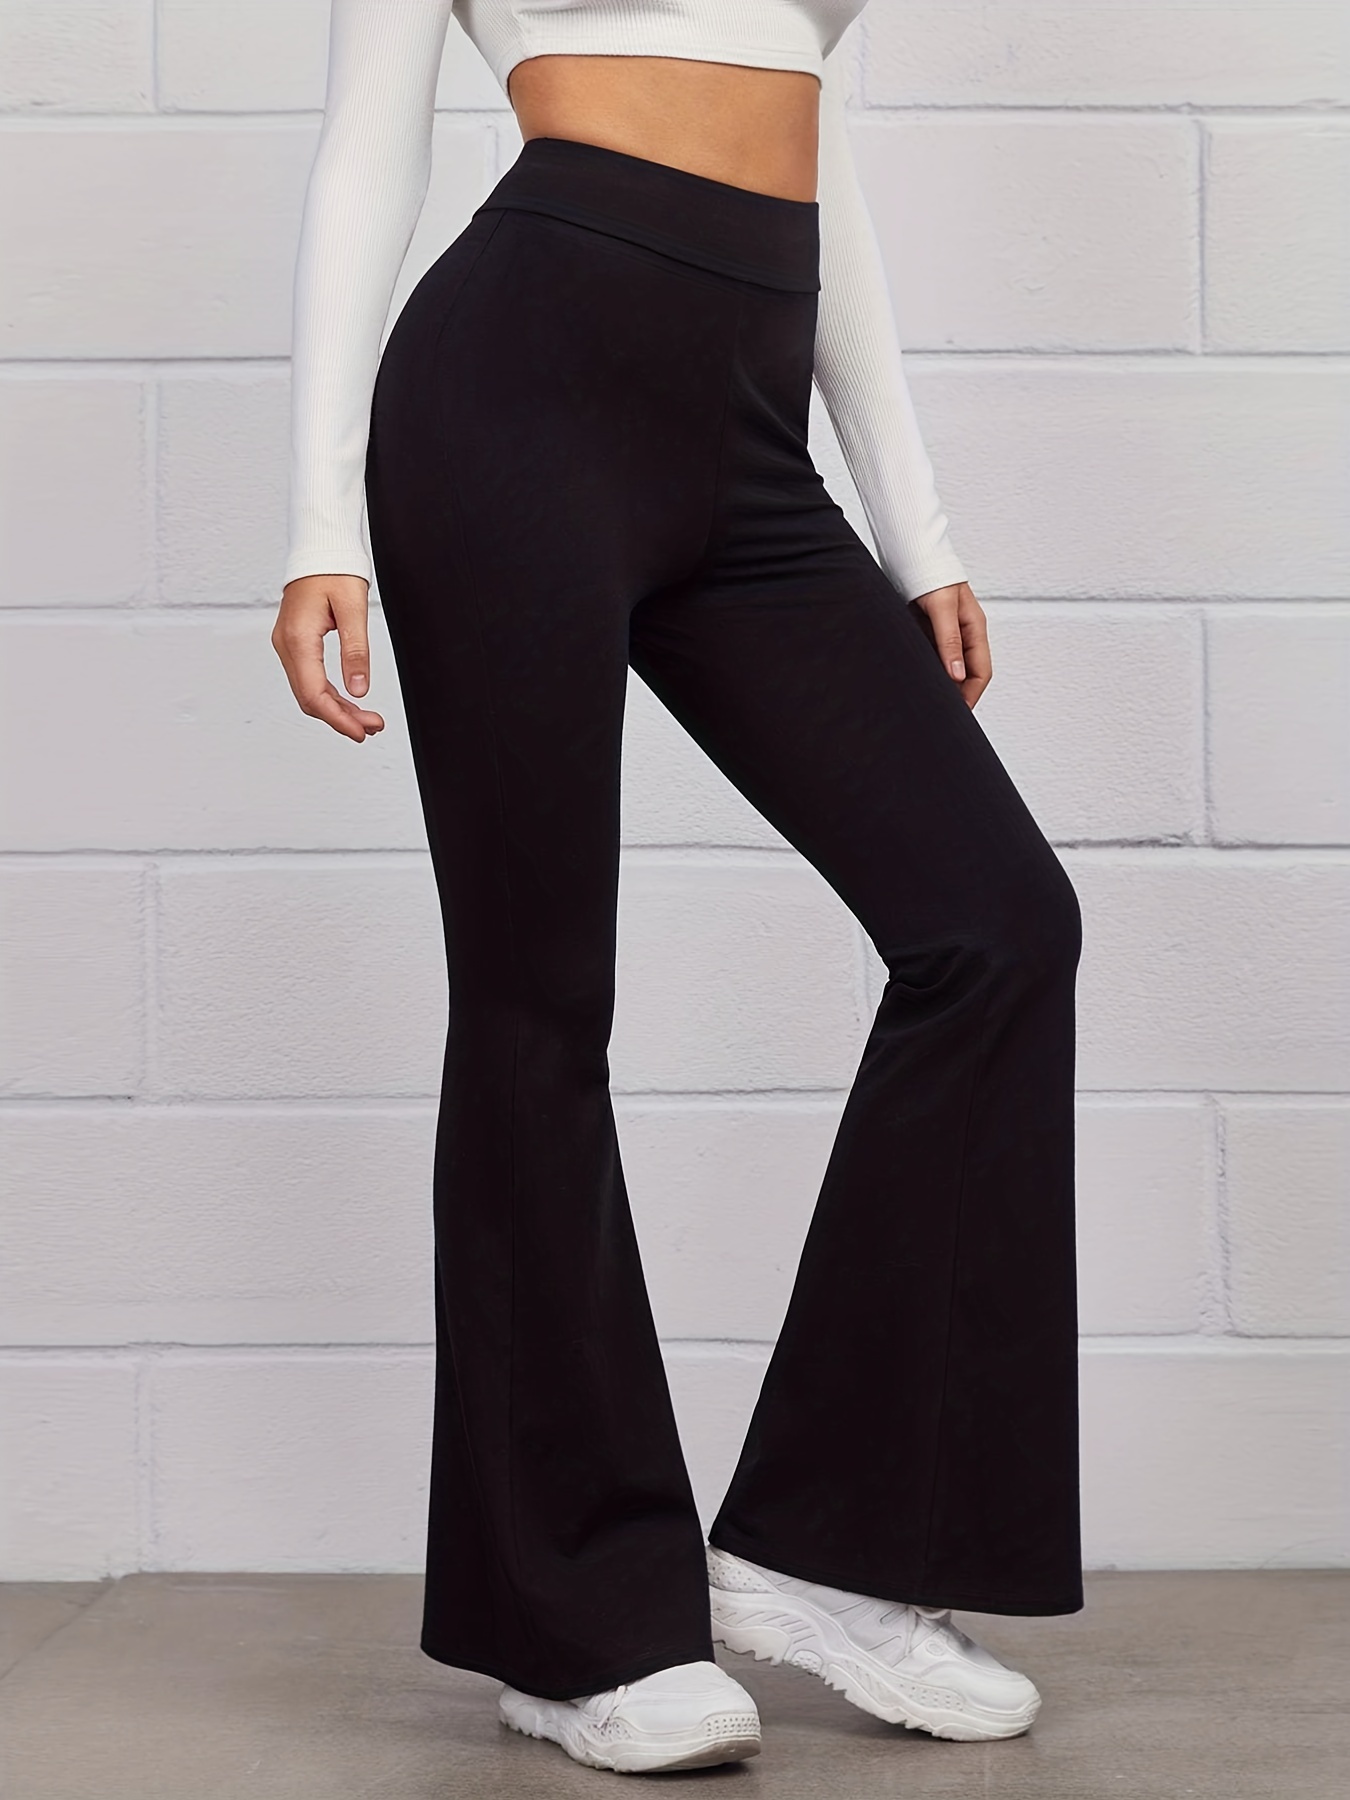 Pantalones largos informales para mujer cintura alta Color sólido